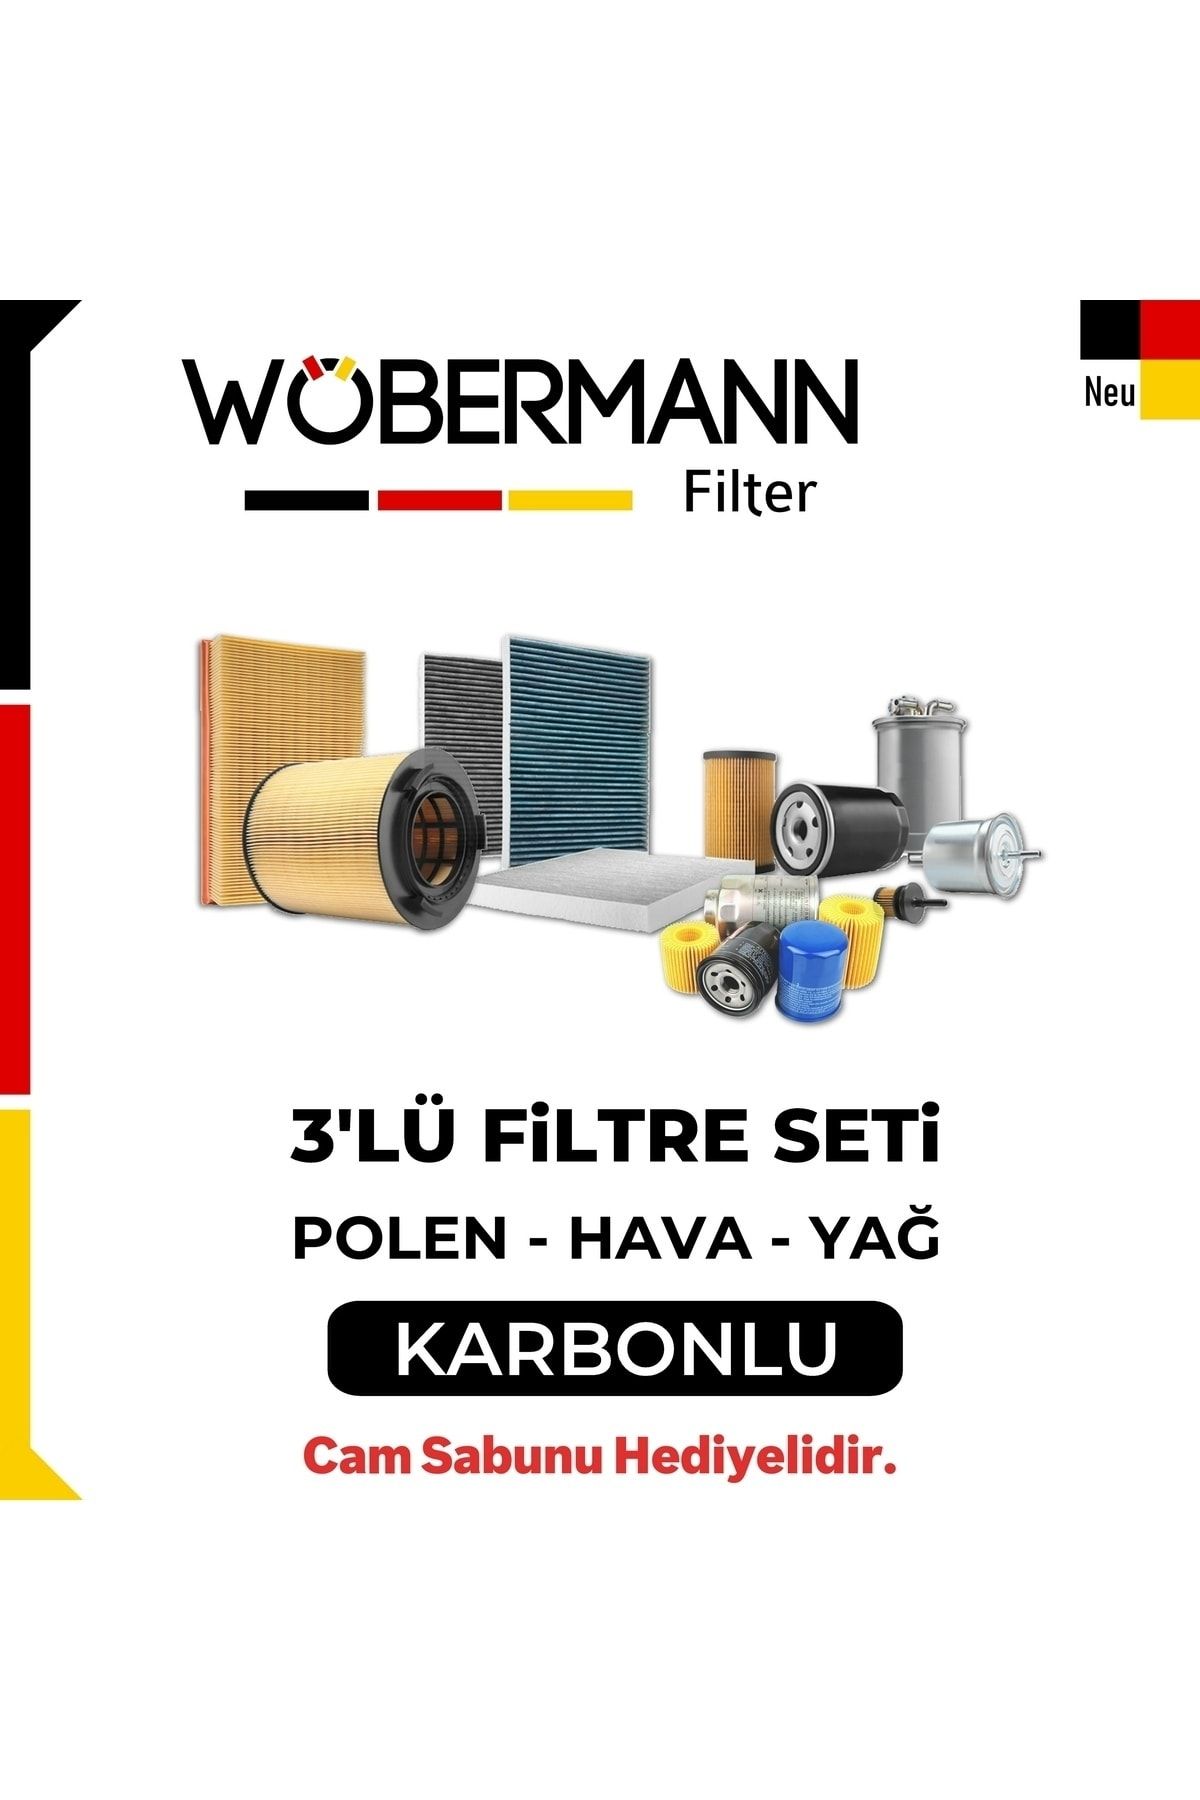 Wöbermann Vw Jetta 1.6 Tdı Filtre Bakım Seti 2009-2010 Cay 3lü Karbonlu